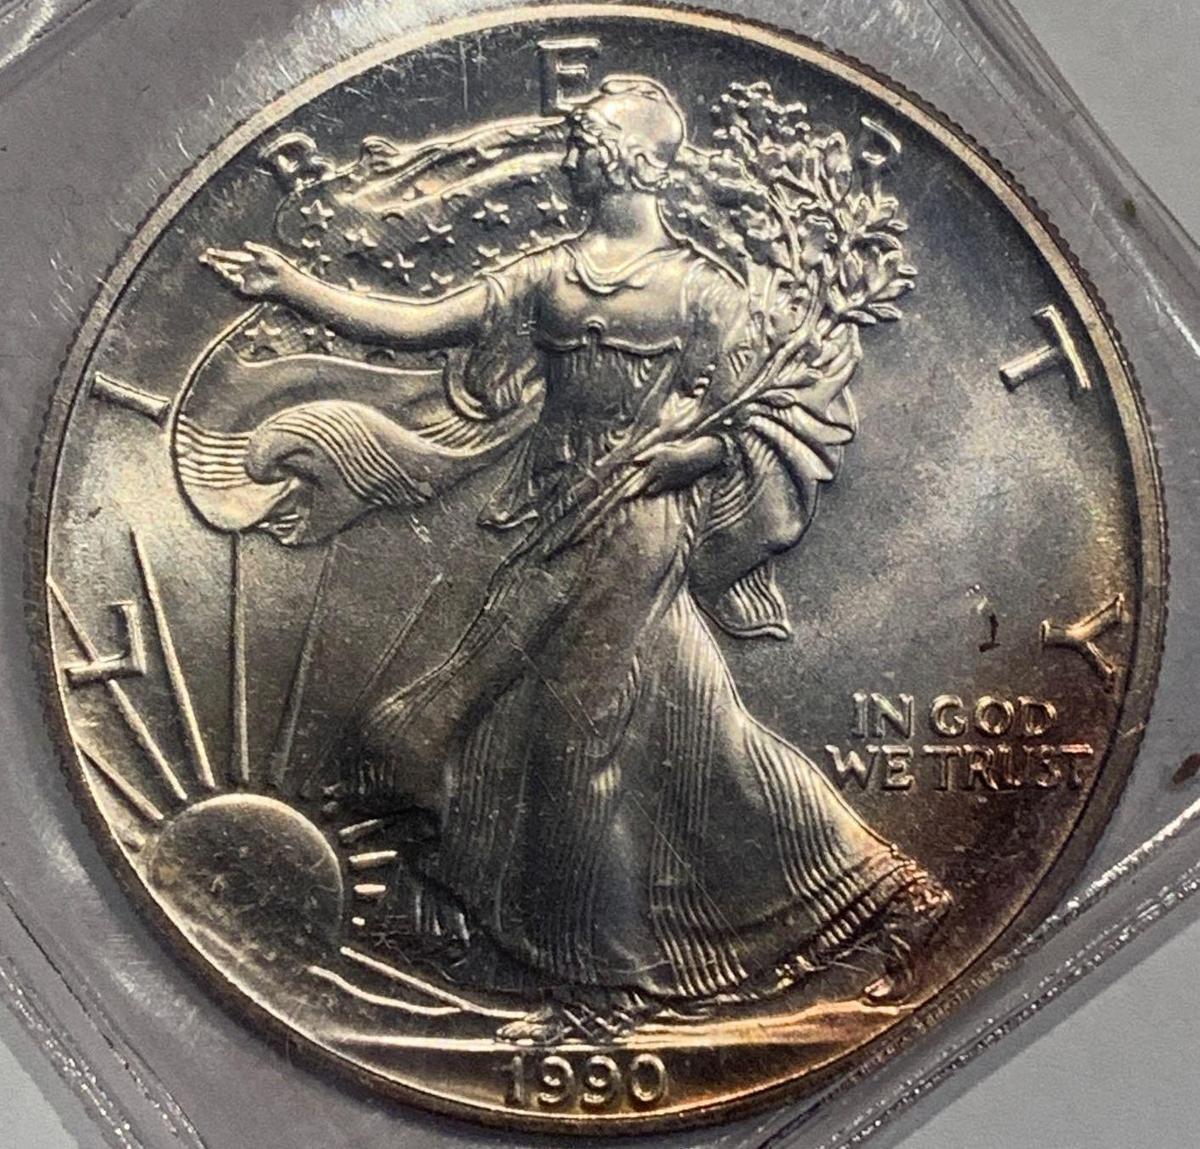 1990 Eagle Silver Dollar